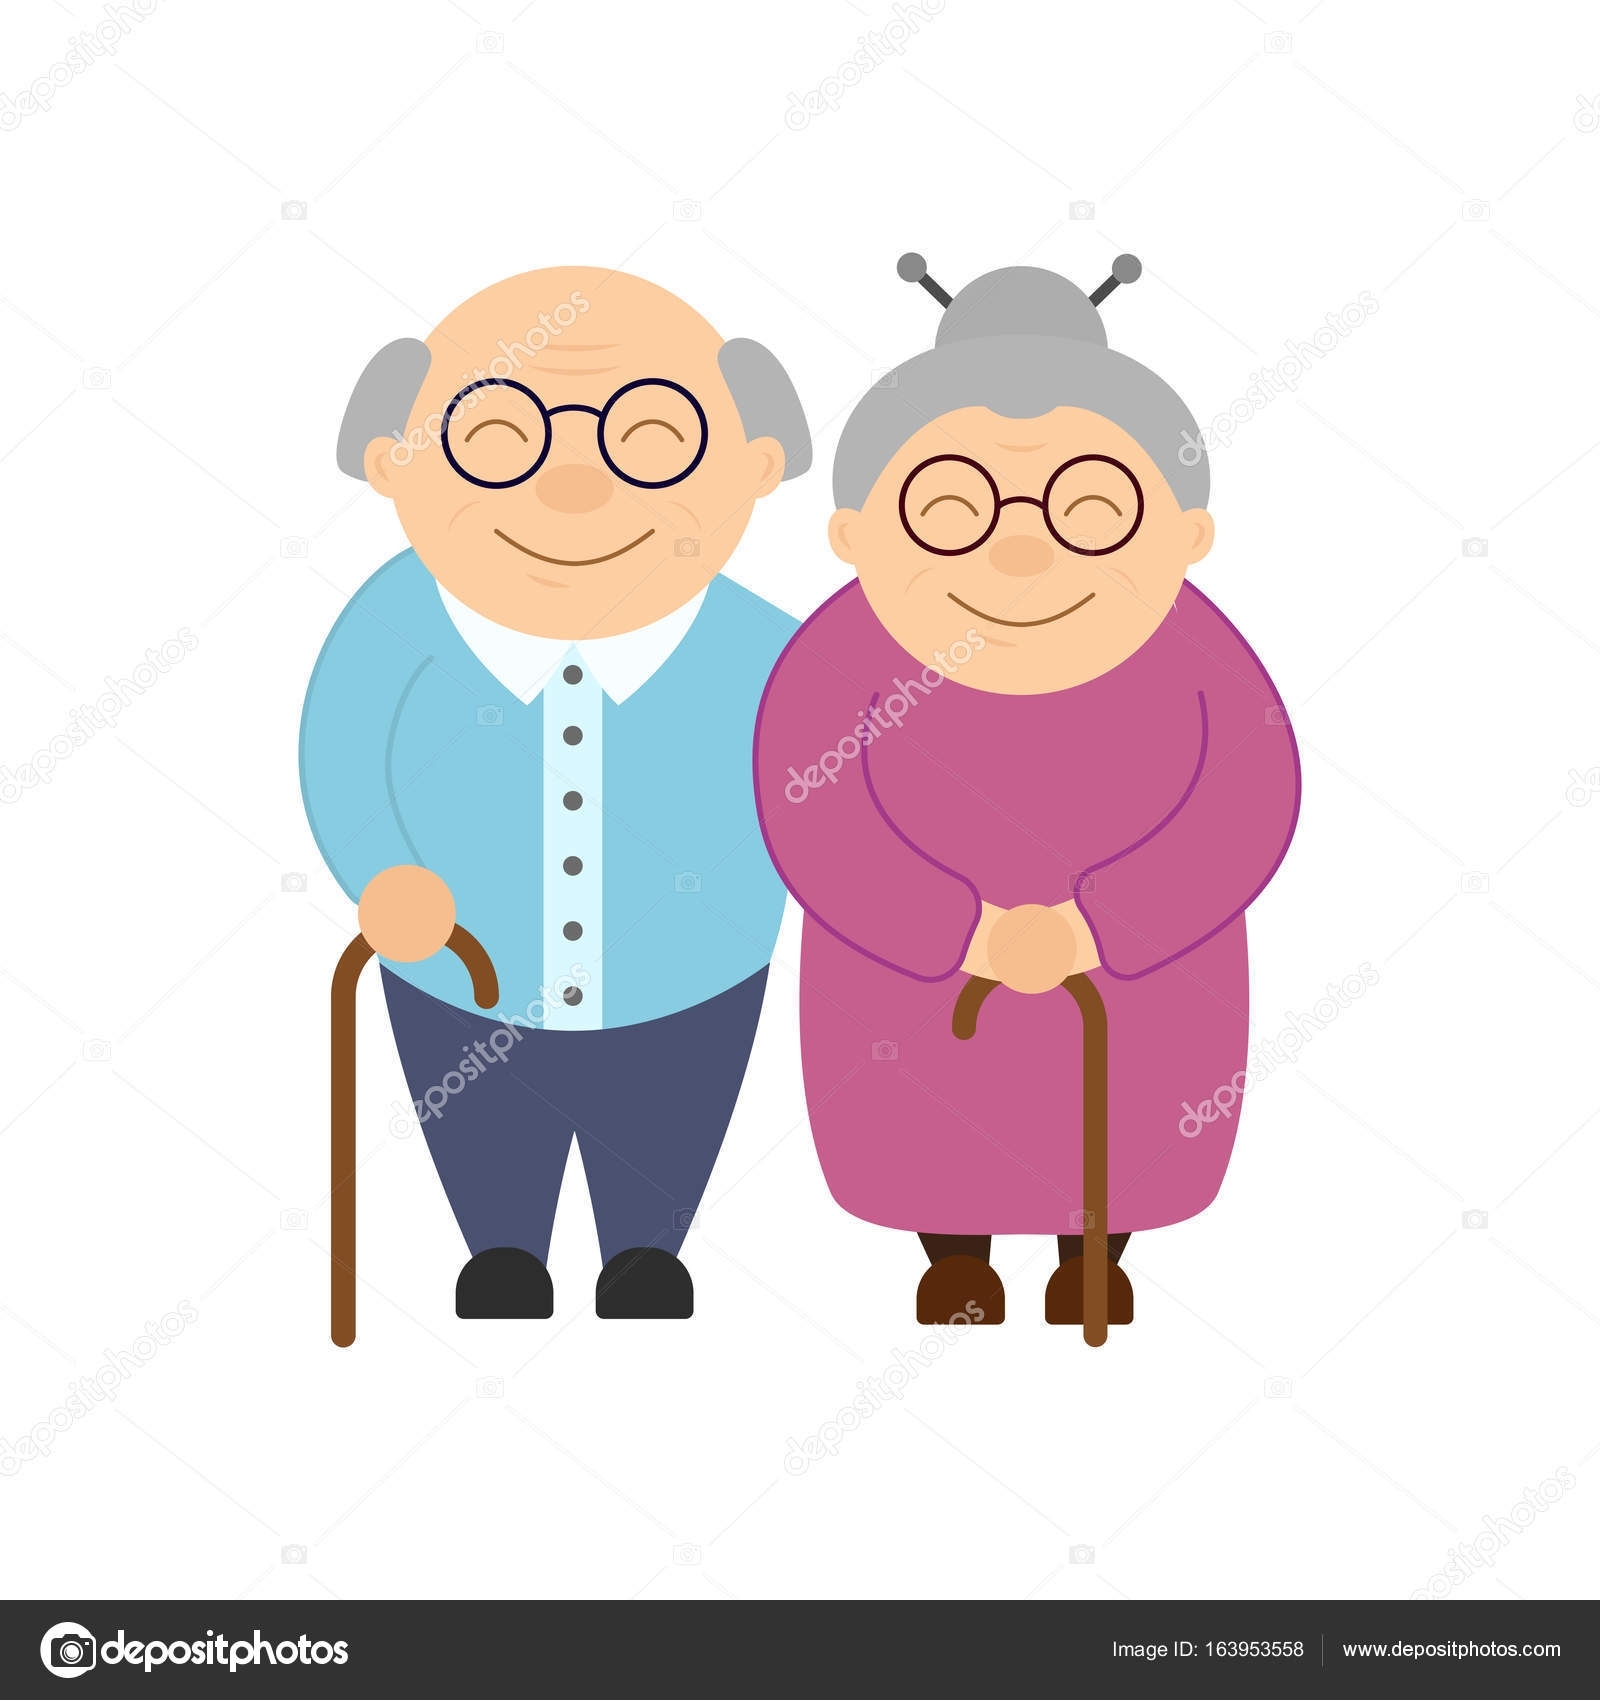 Толстый дед бабушки. Пожилые люди. Изображение бабушки и дедушки. Бабушка и дедушка без фона. Пожилые люди иллюстрация.